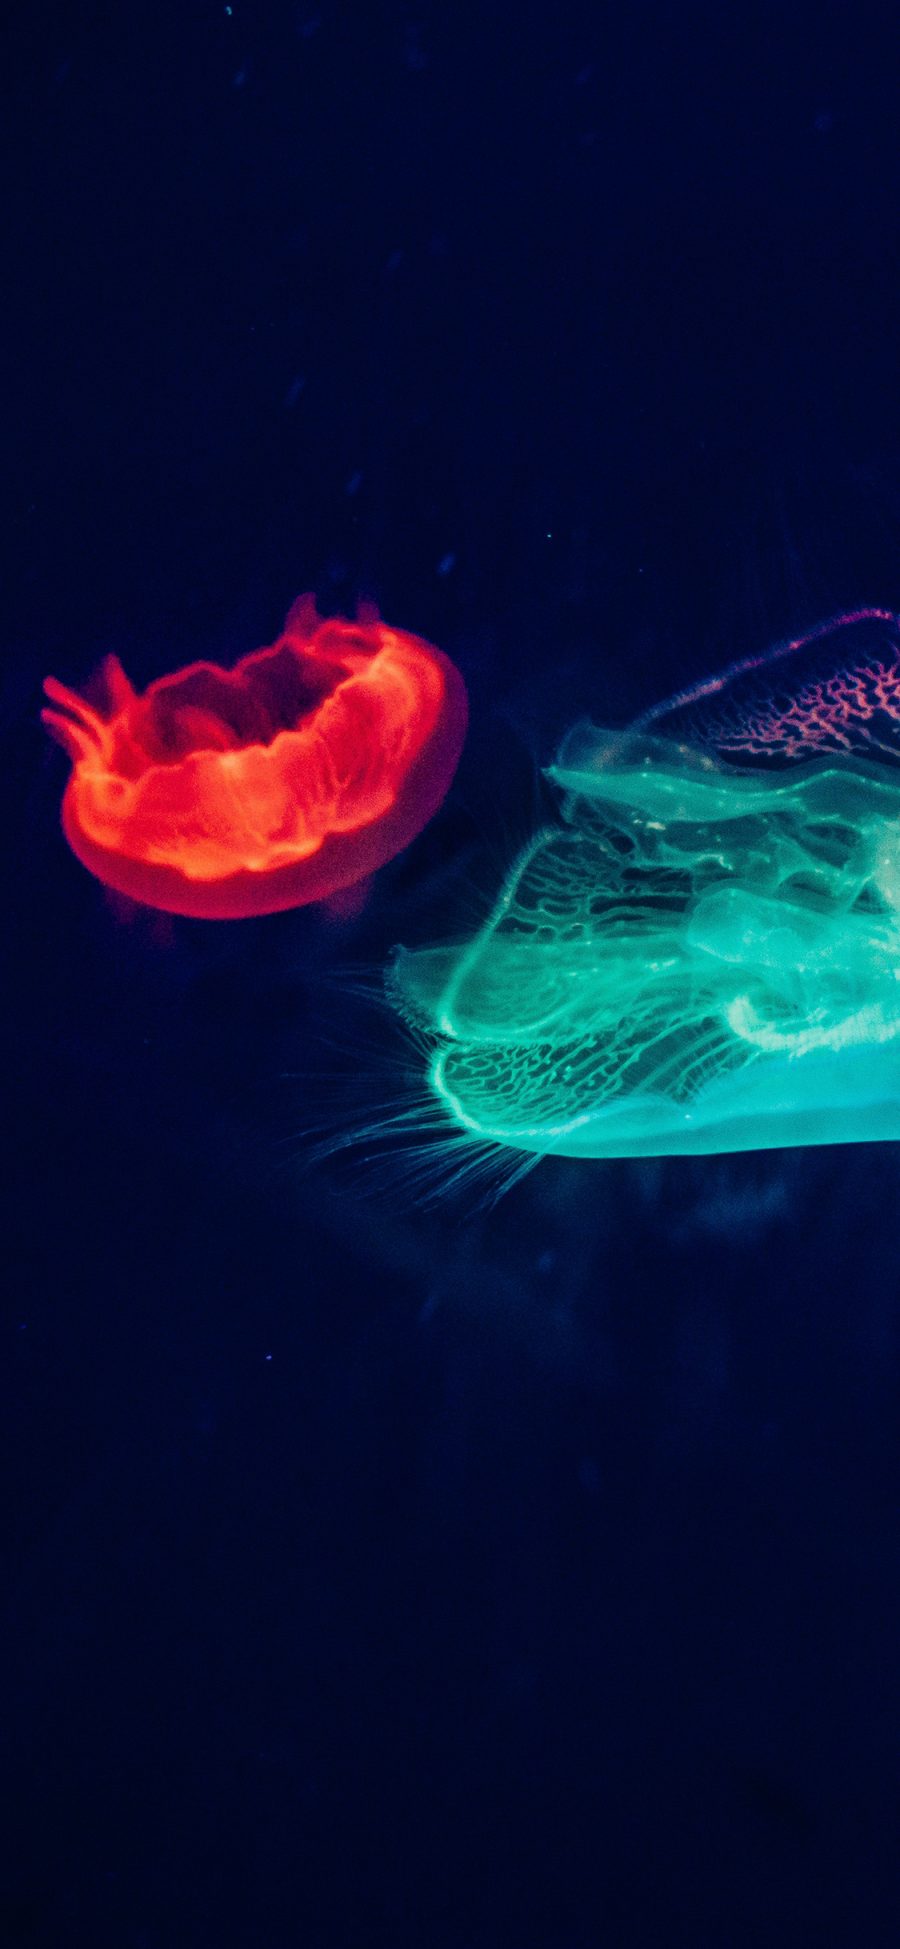 [2436×1125]观赏性 海洋生物 浮游 荧光 海蜇 苹果手机壁纸图片